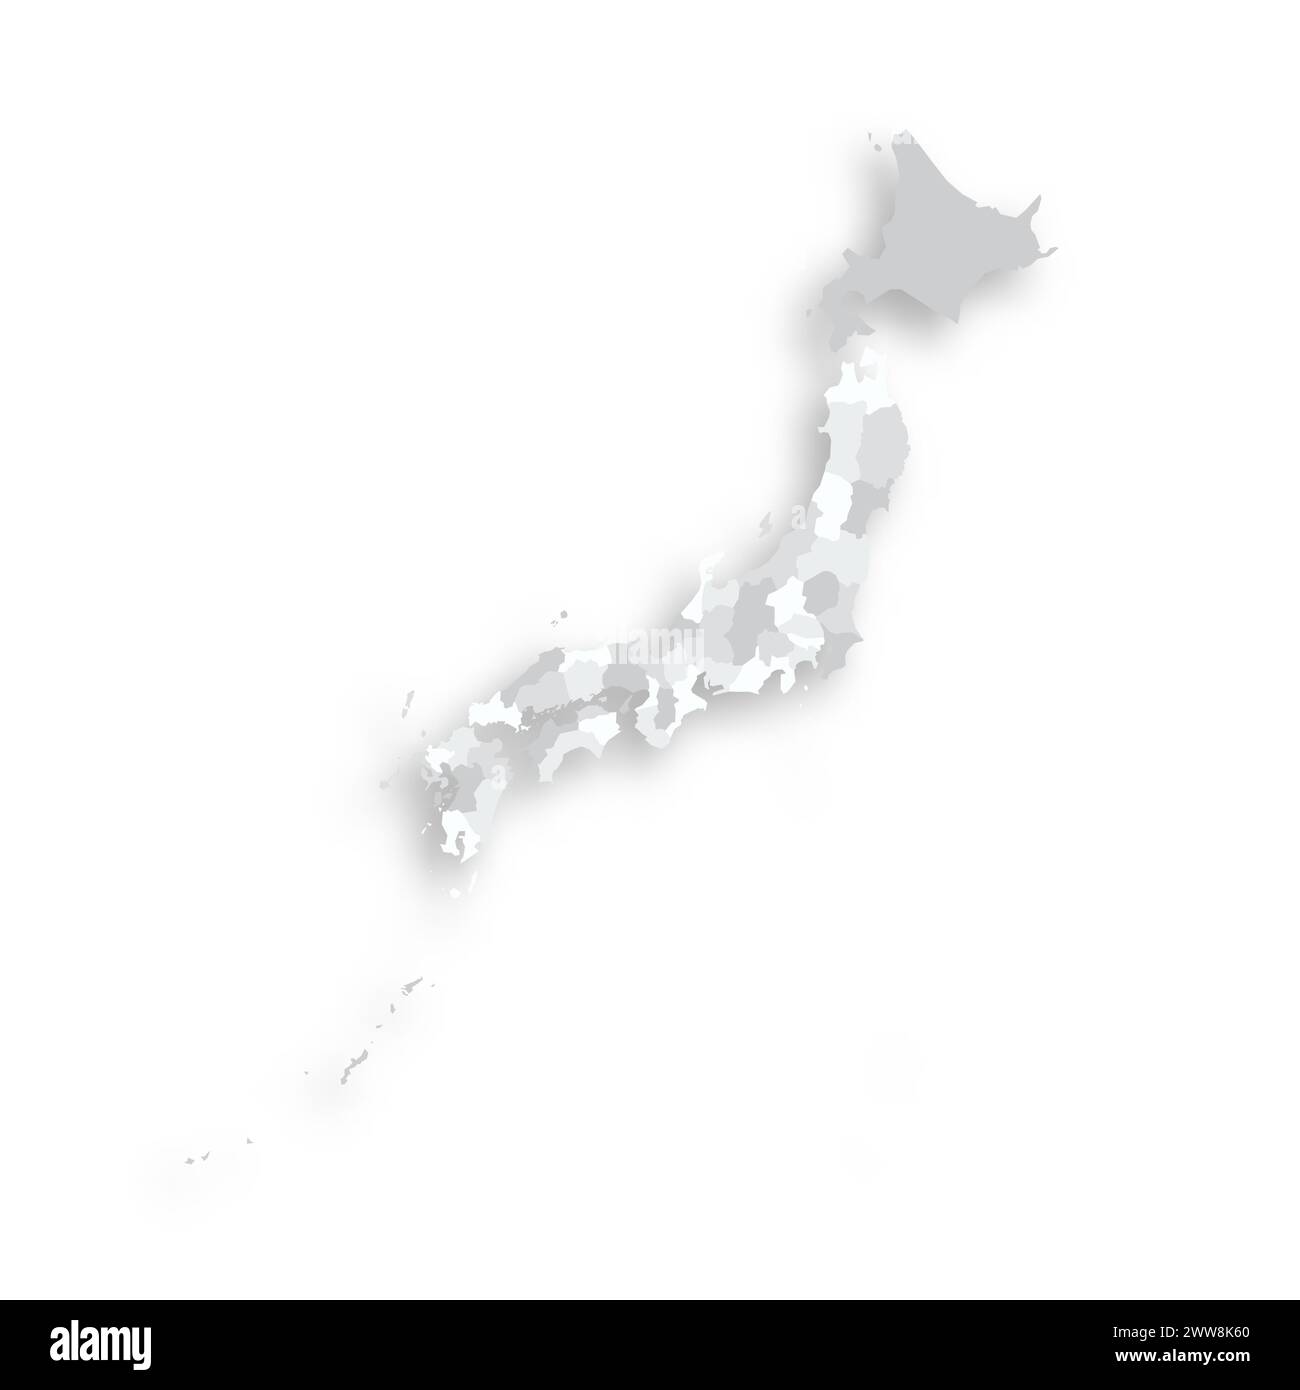 Japan politische Karte der Verwaltungsbereiche - Präfekturen, Metropilis Tokio, Territorium Hokaido und Stadtpräfekturen Kyoto und Osaka. Graue leere flache Vektorkarte mit fallendem Schatten. Stock Vektor